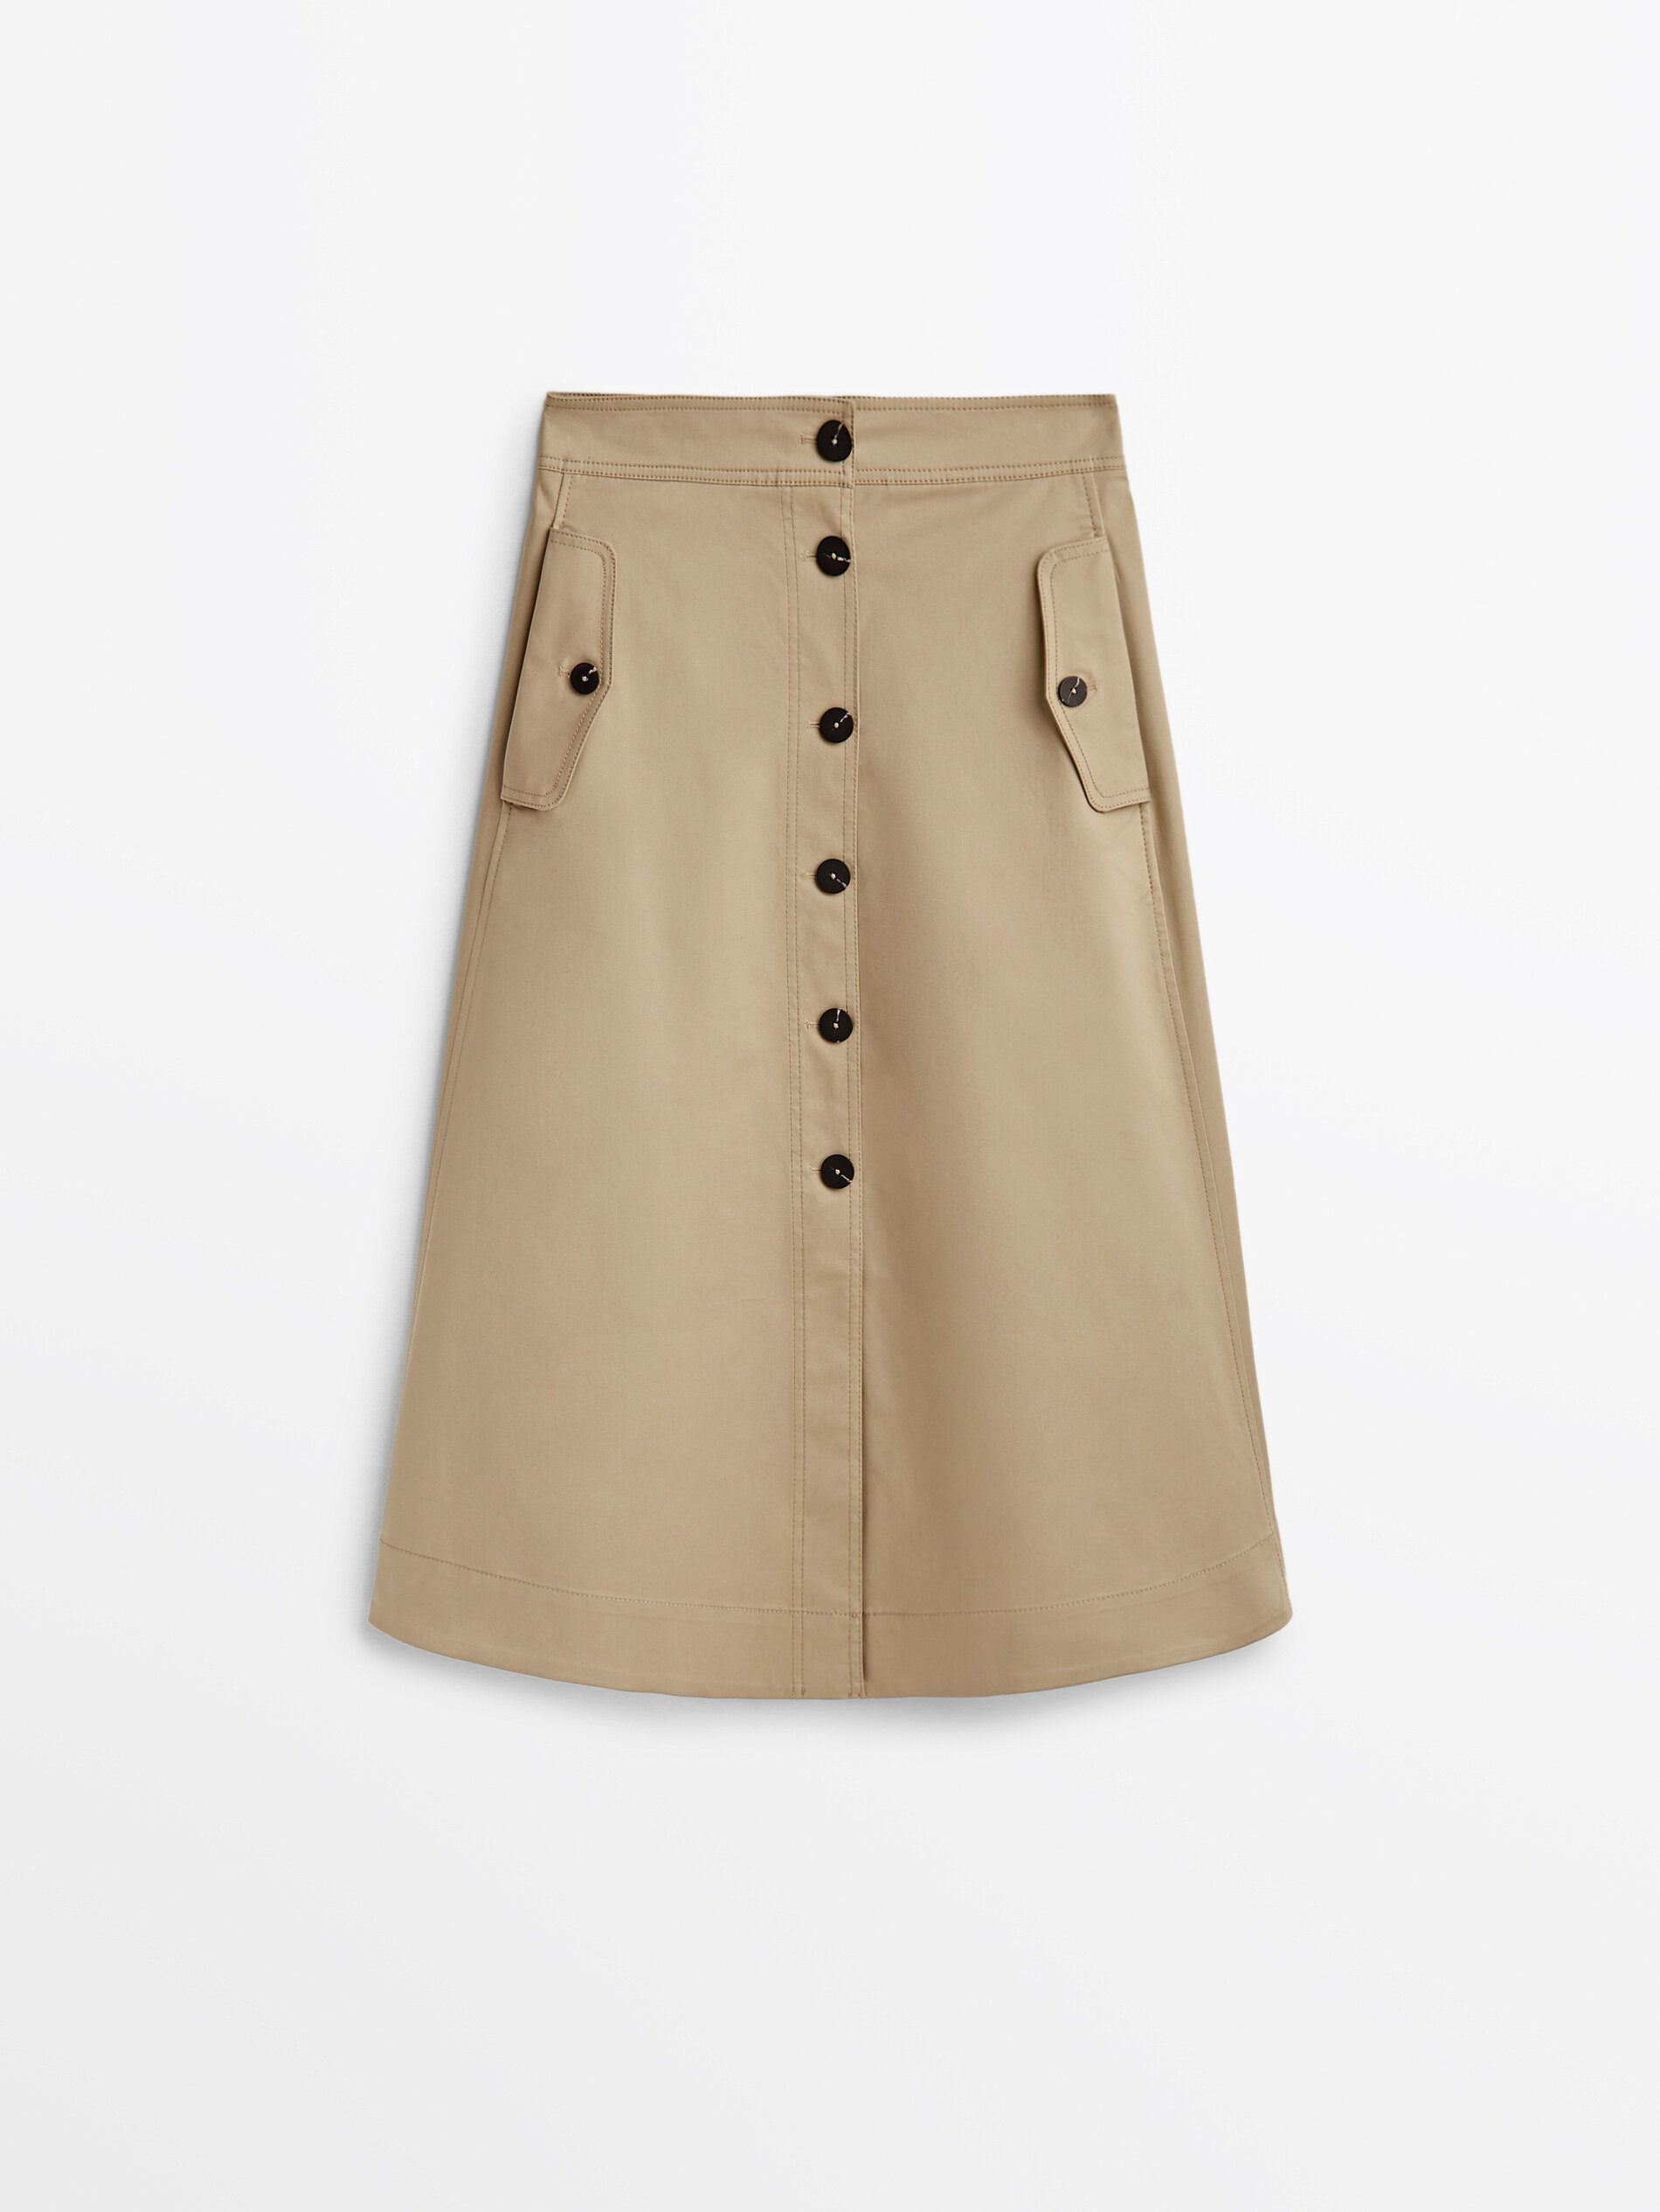 Alexander Graham Bell mando Jabeth Wilson Estas son las 9 faldas de Massimo Dutti más fáciles de combinar esta  primavera verano | Moda